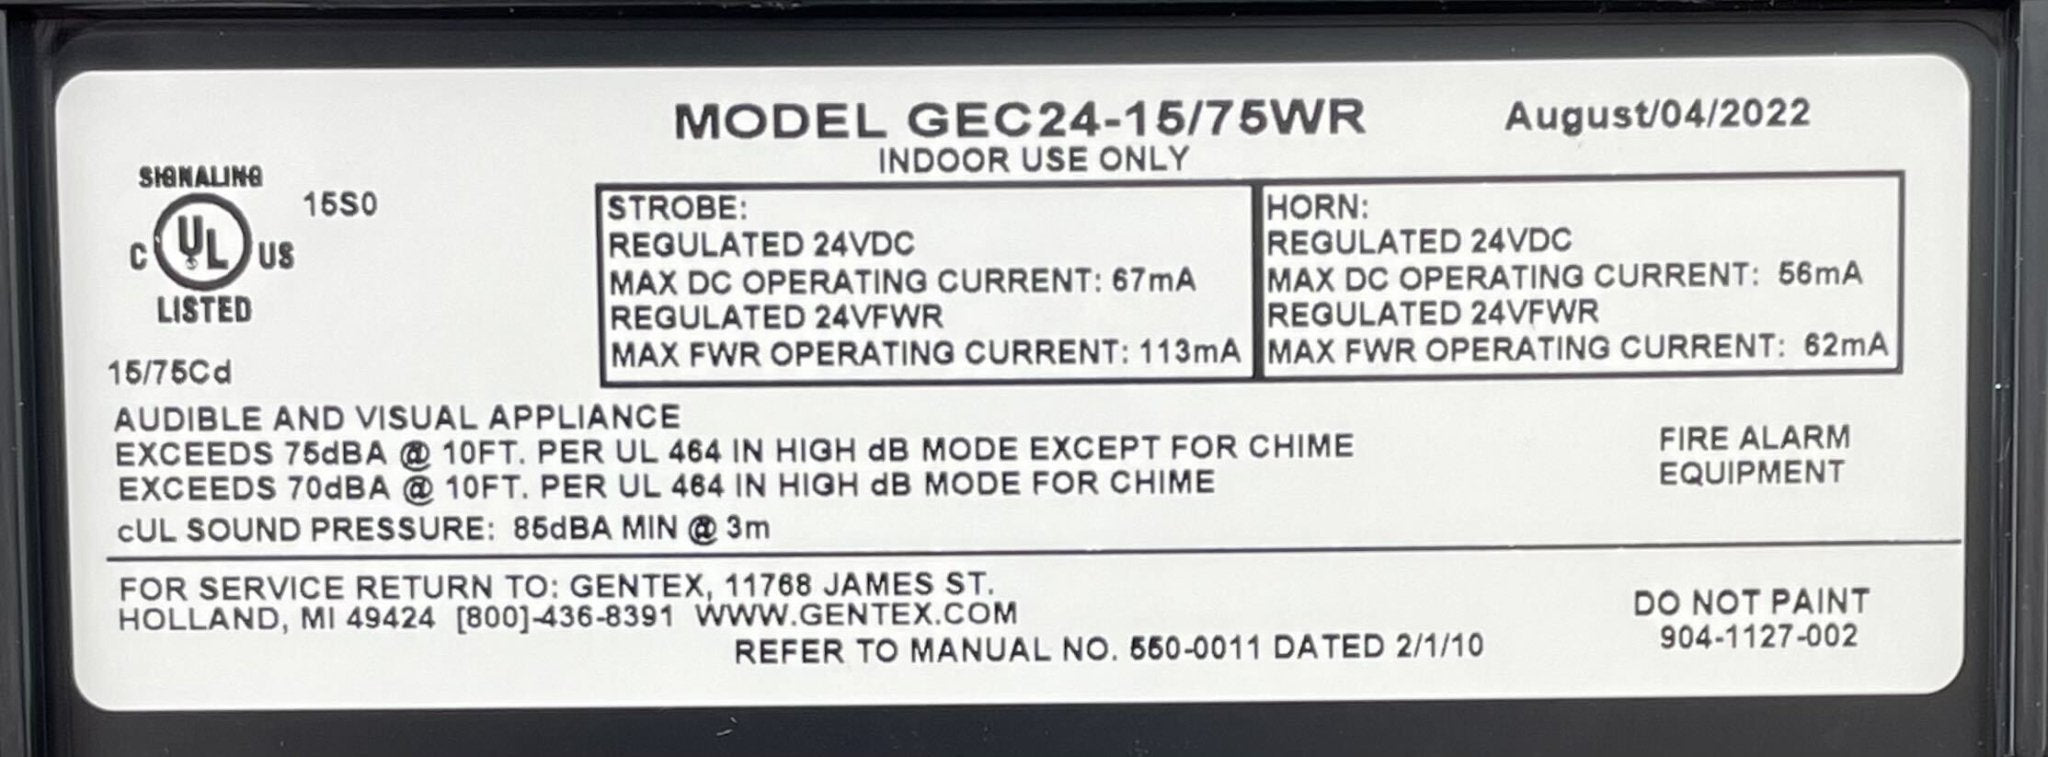 Gentex GEC24-1575WR - The Fire Alarm Supplier